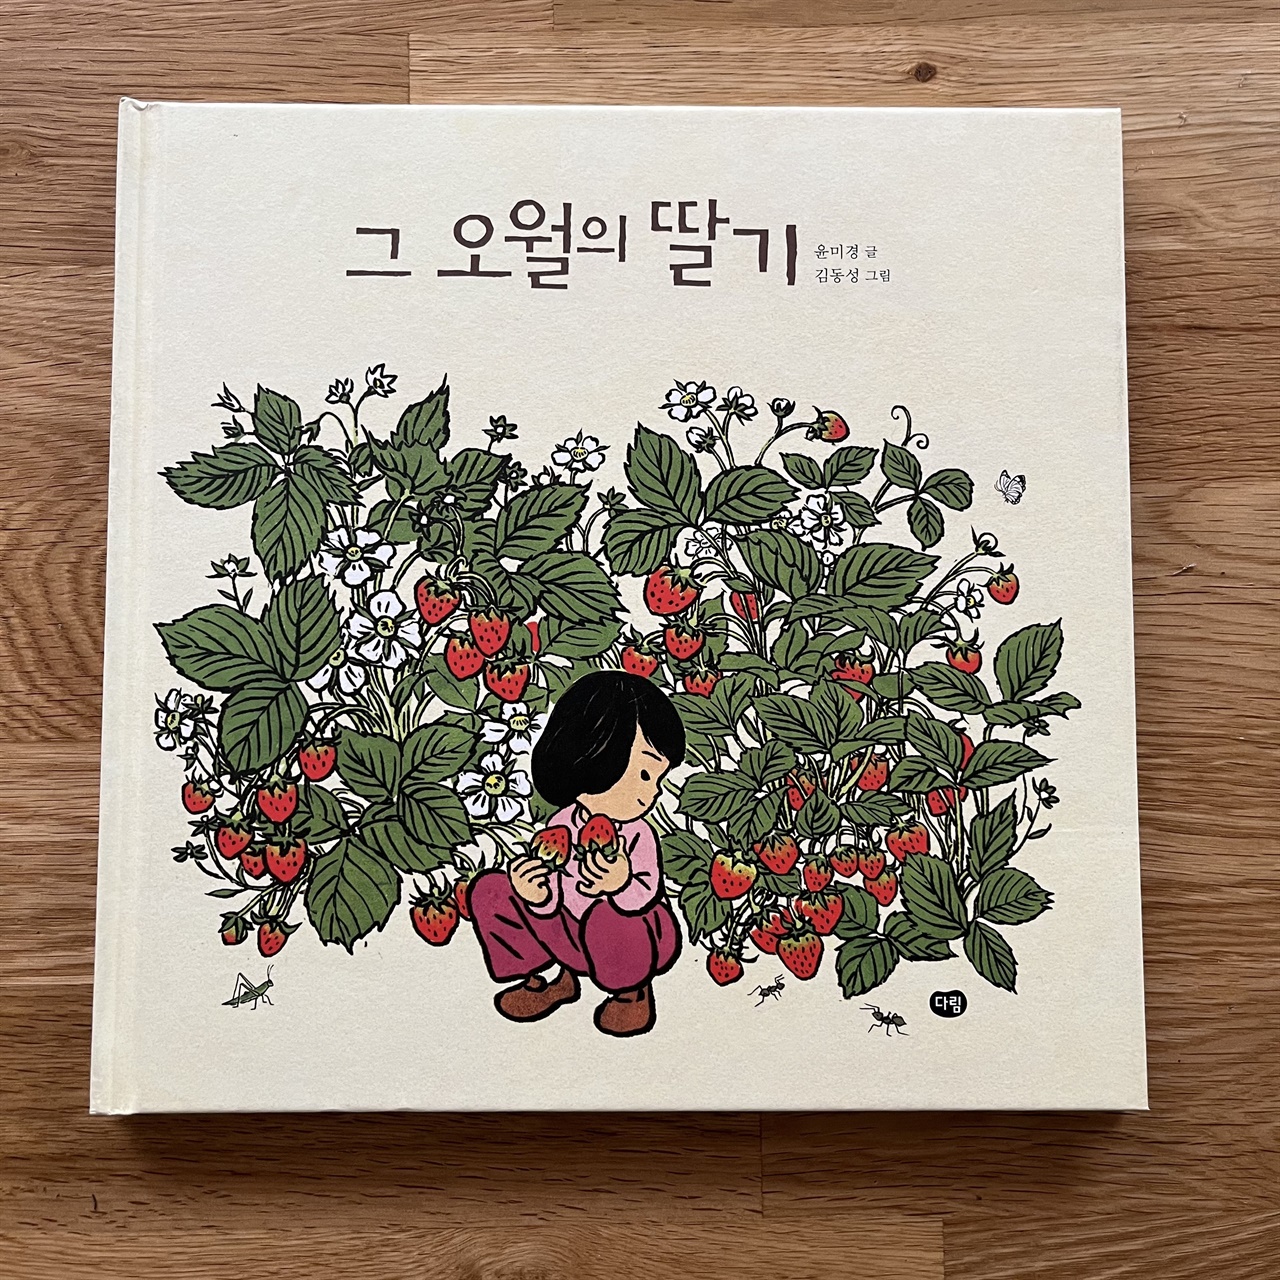 그림책 <그 오월의 딸기> 표지. 